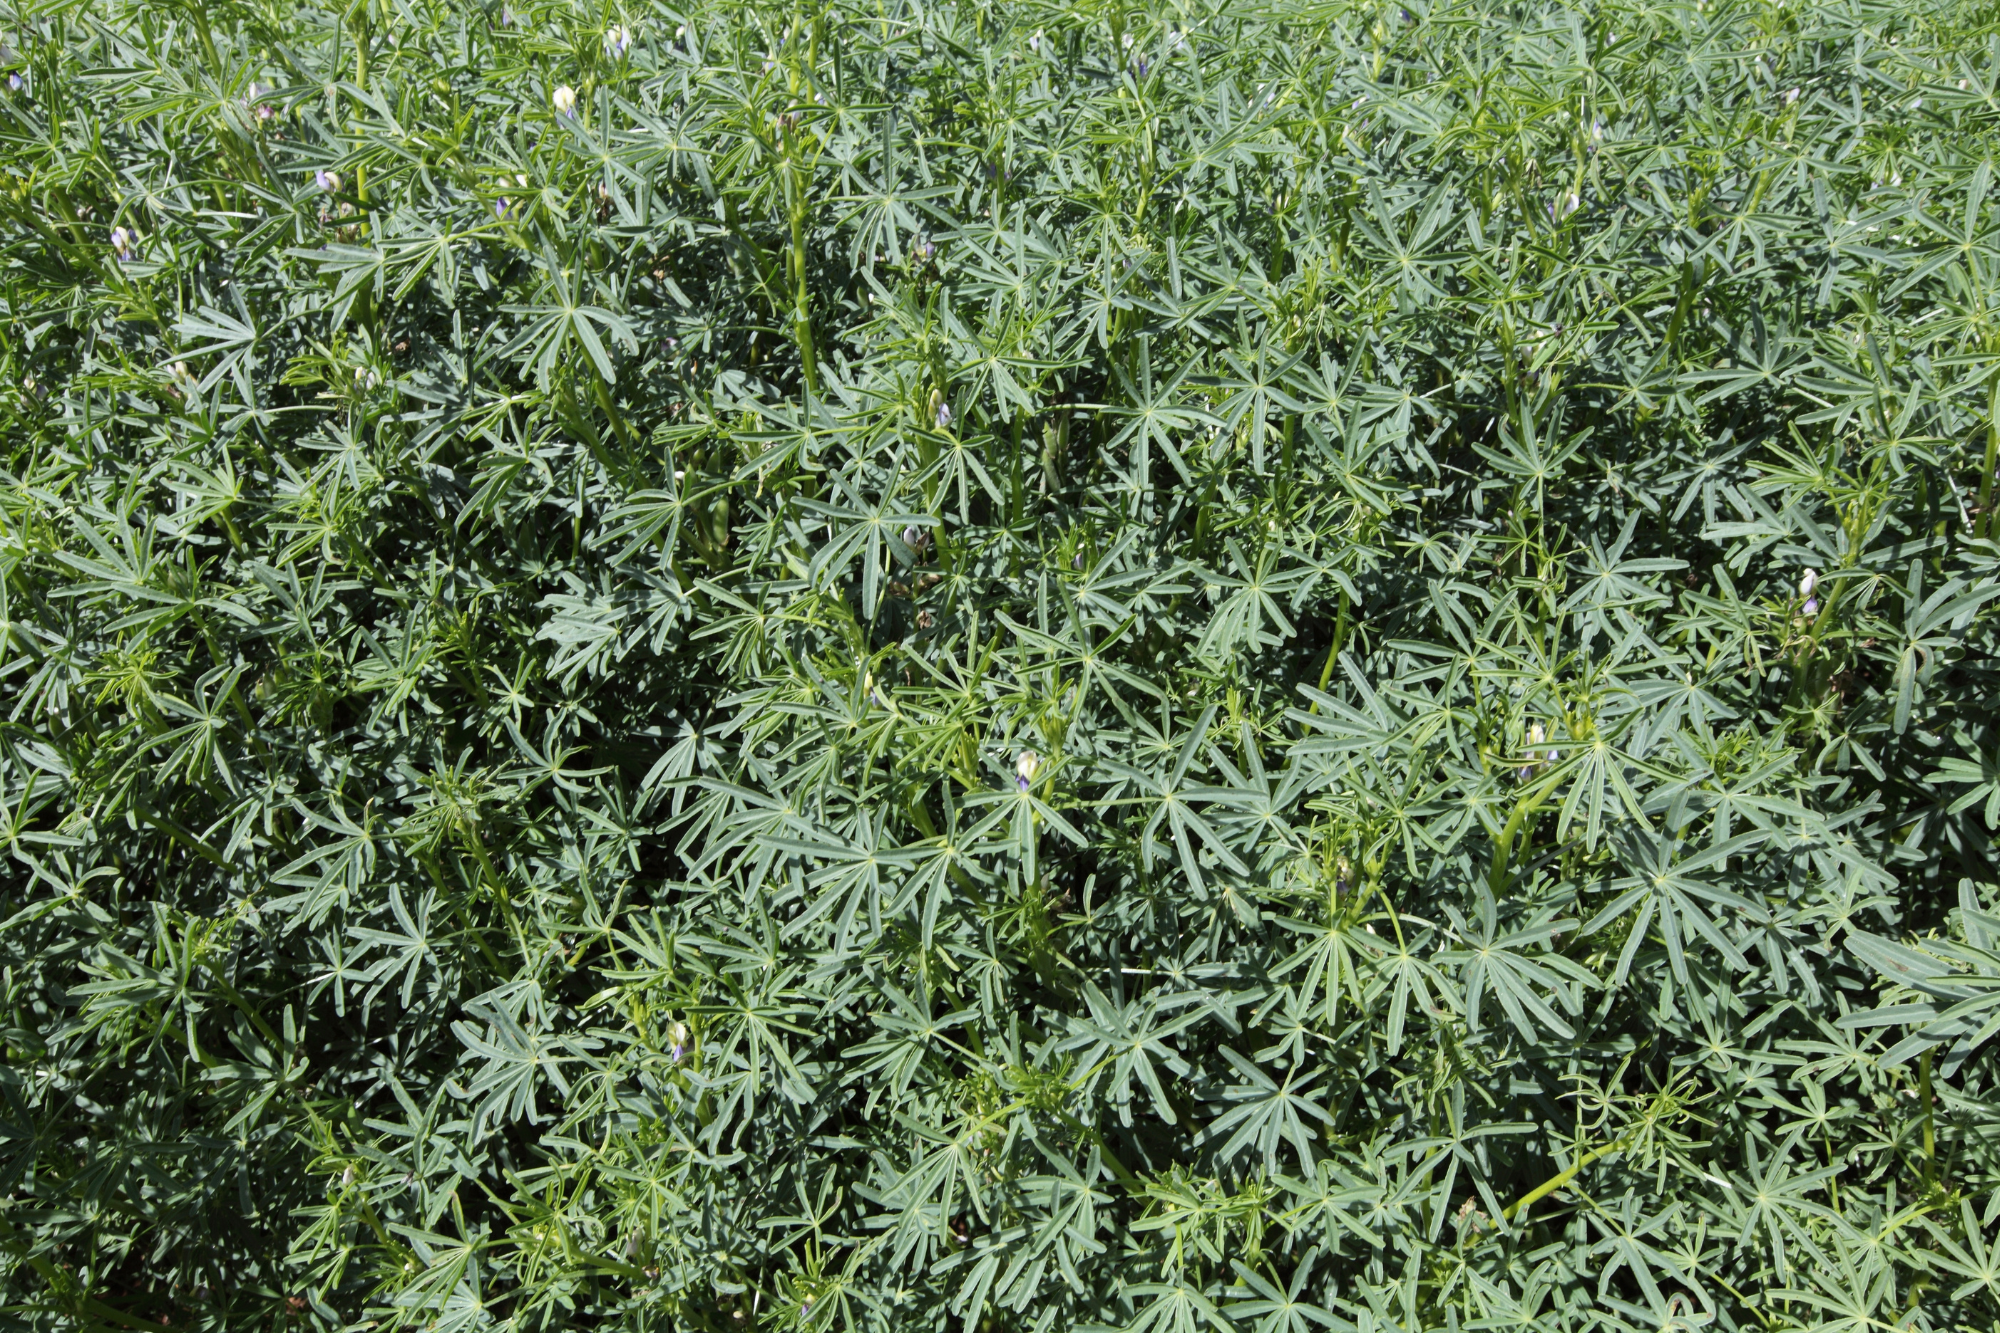 aerial view of hemp pulse crops